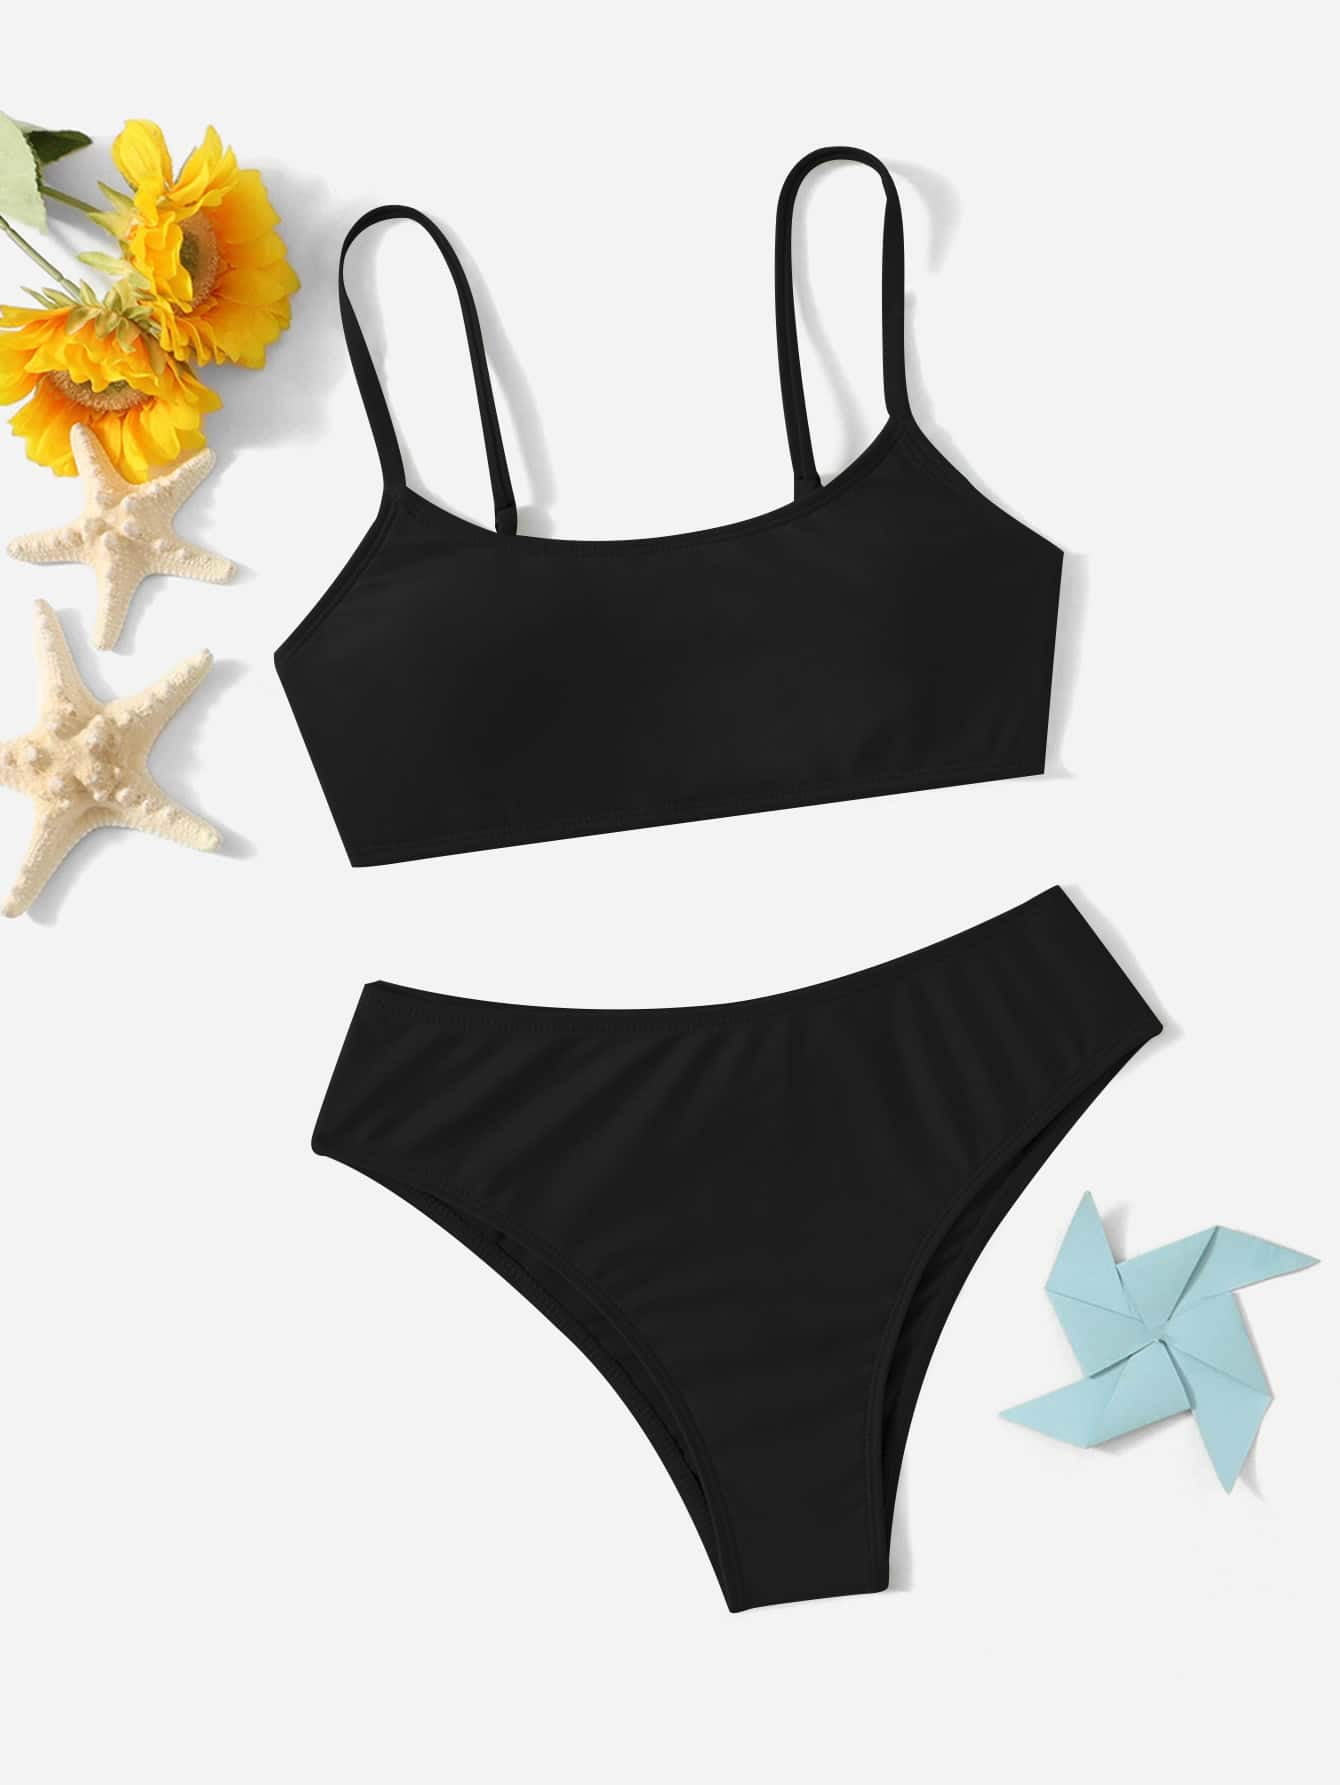 Teen Girls Solid Bikini Swimsuit 12-13Y(62IN) Black Boho F22019D-1 ...